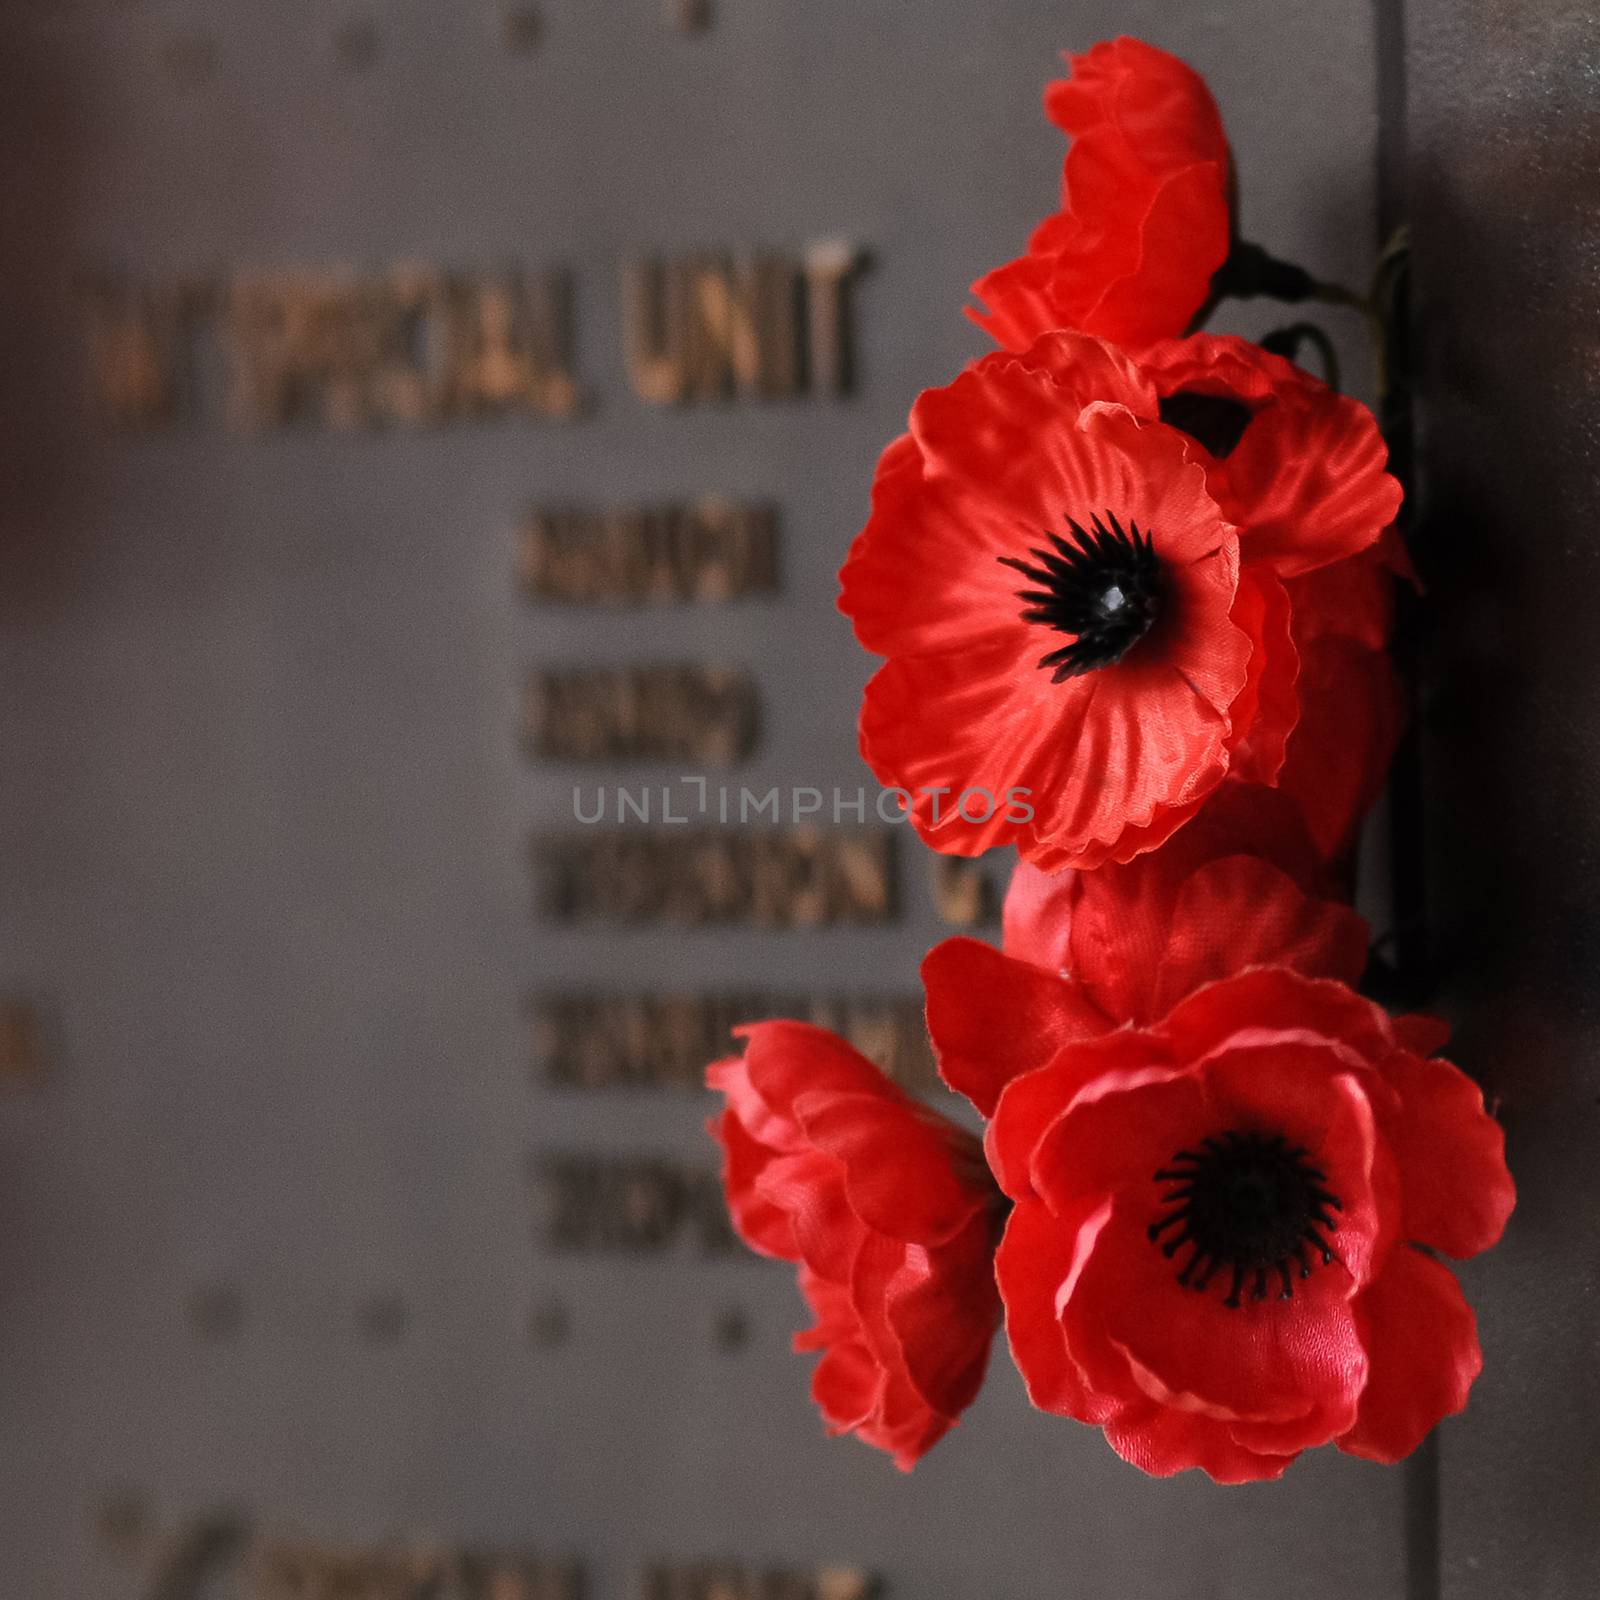 Red Poppy flower to honour the fallen veteran hero on Anzac Day by eyeofpaul